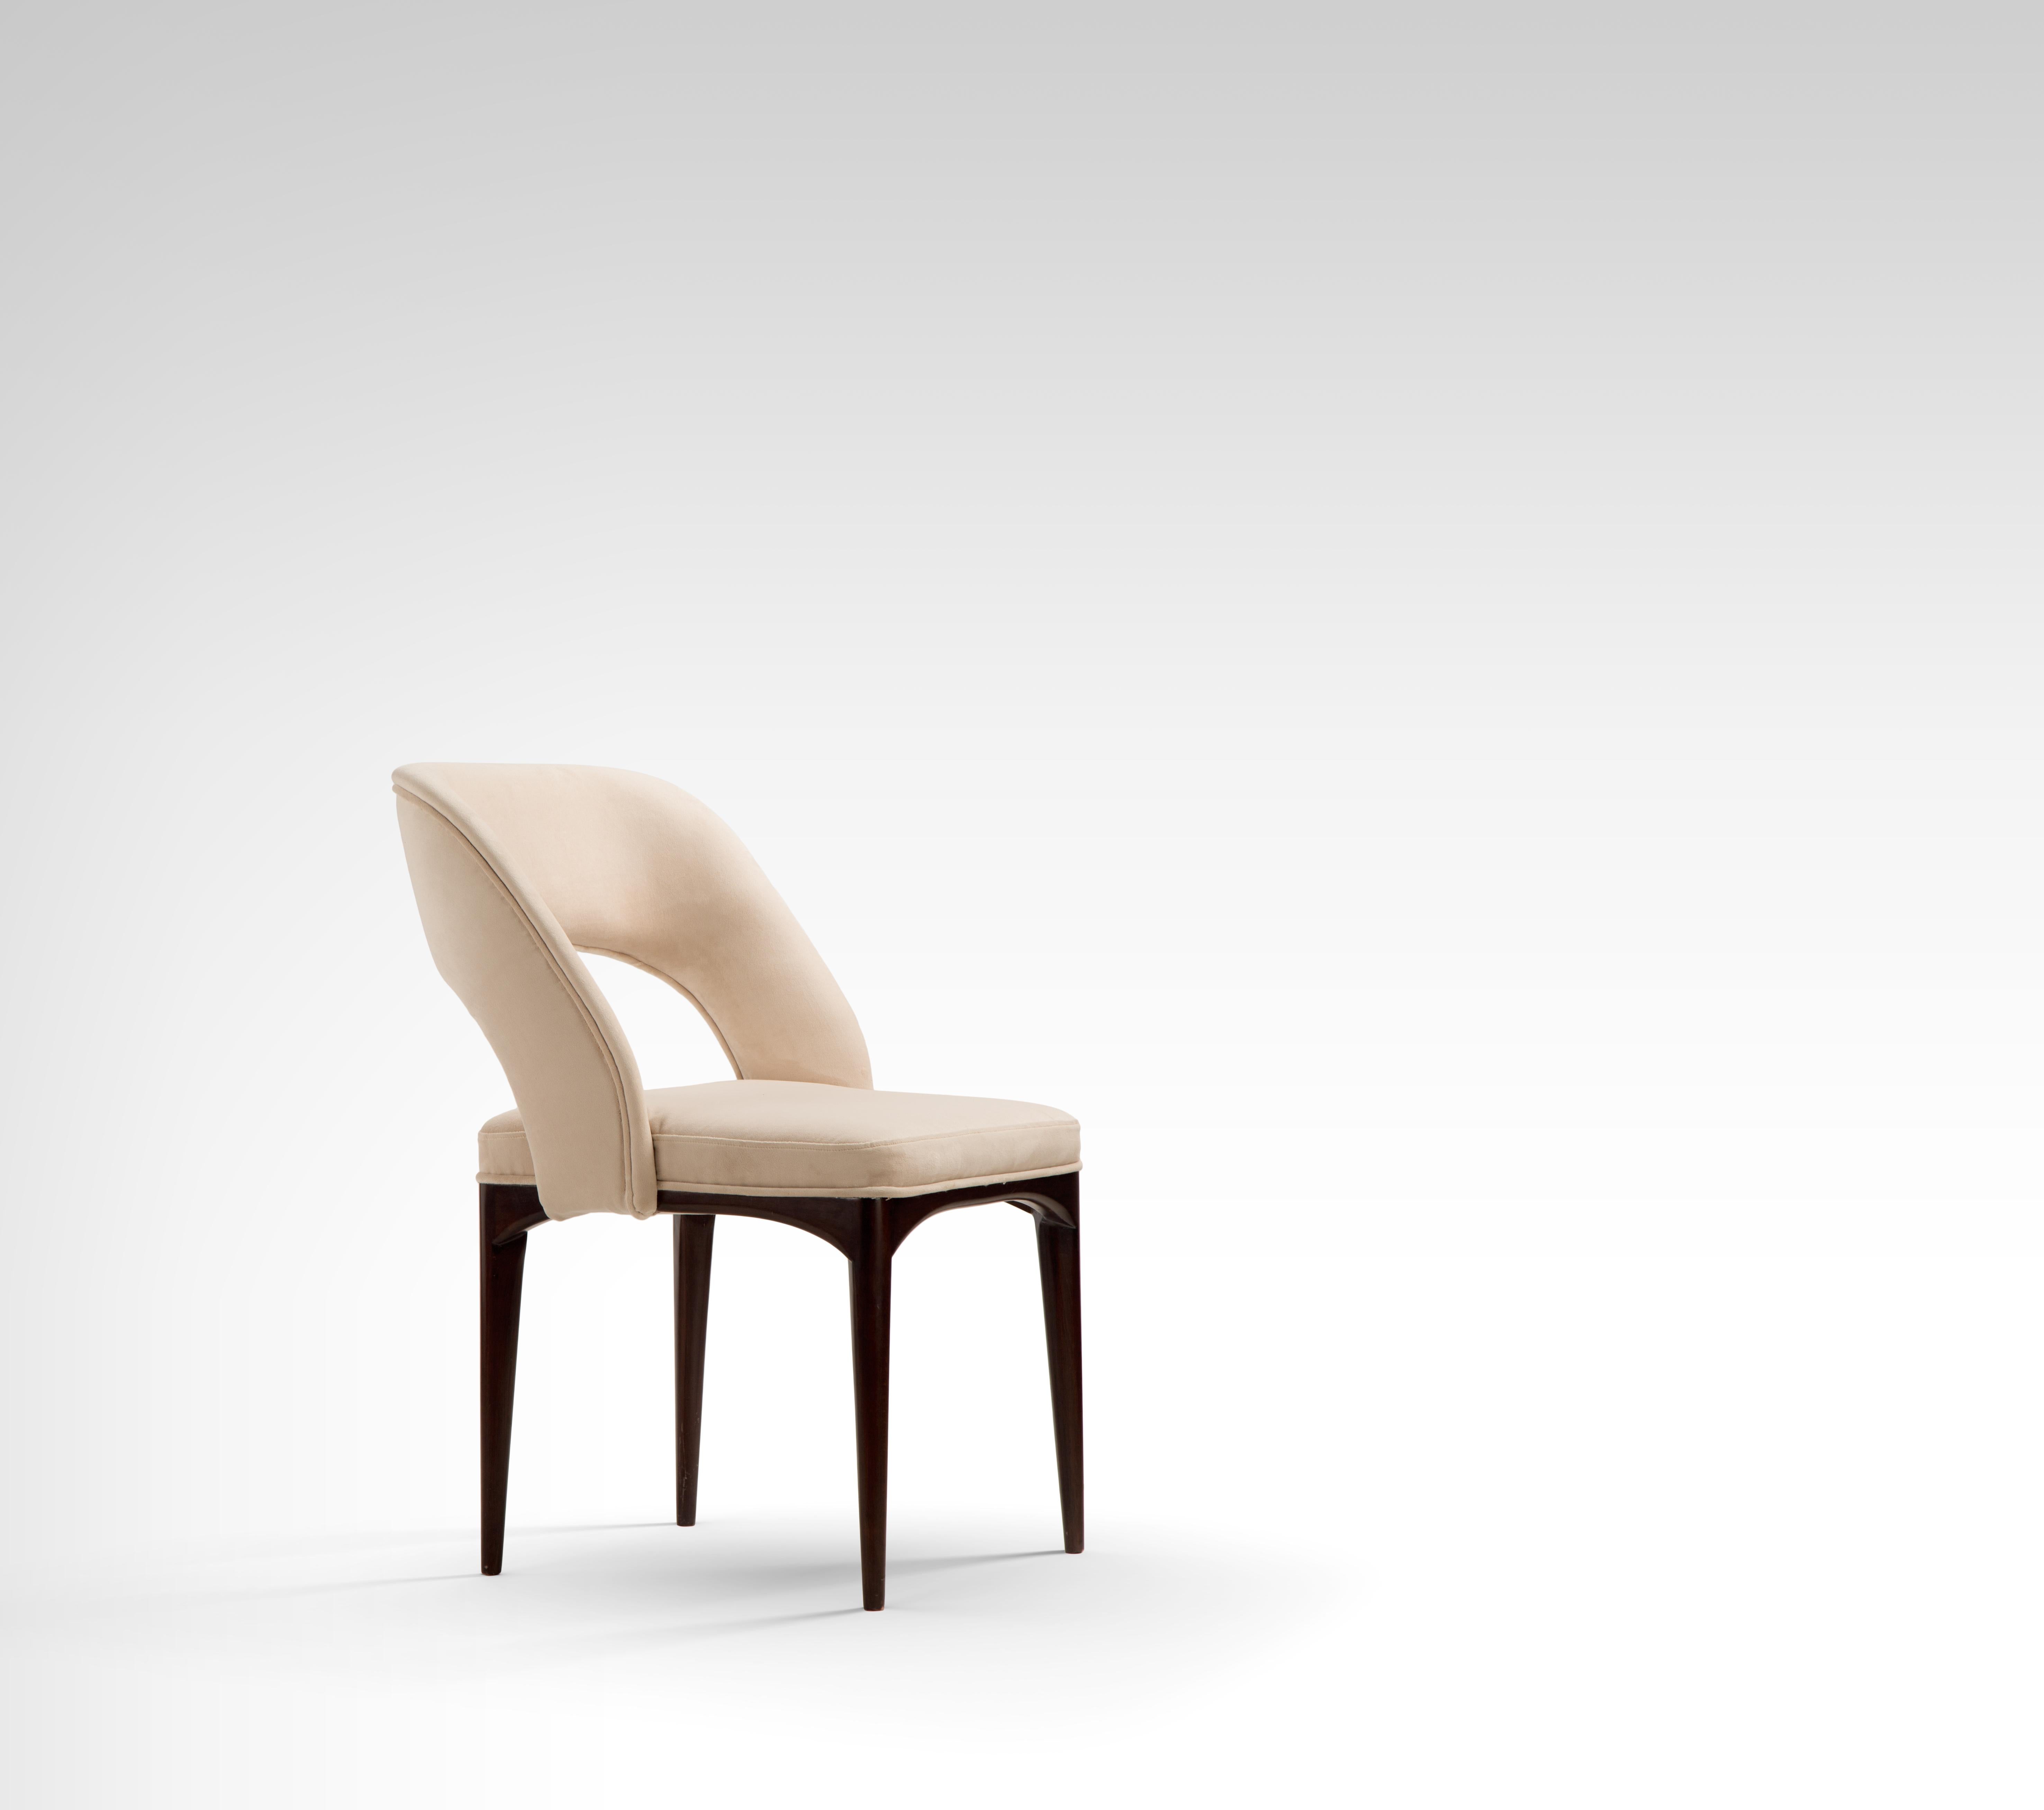 Esszimmerstuhl aus Zedernholz mit Kunstlederpolsterung.
Es ist einfach modern! Entspannen Sie sich in einem eleganten Sessel mit einer geschwungenen Silhouette für ein gemütliches Erlebnis. Er ist aus Zedernholz gefertigt und mit beigefarbenem